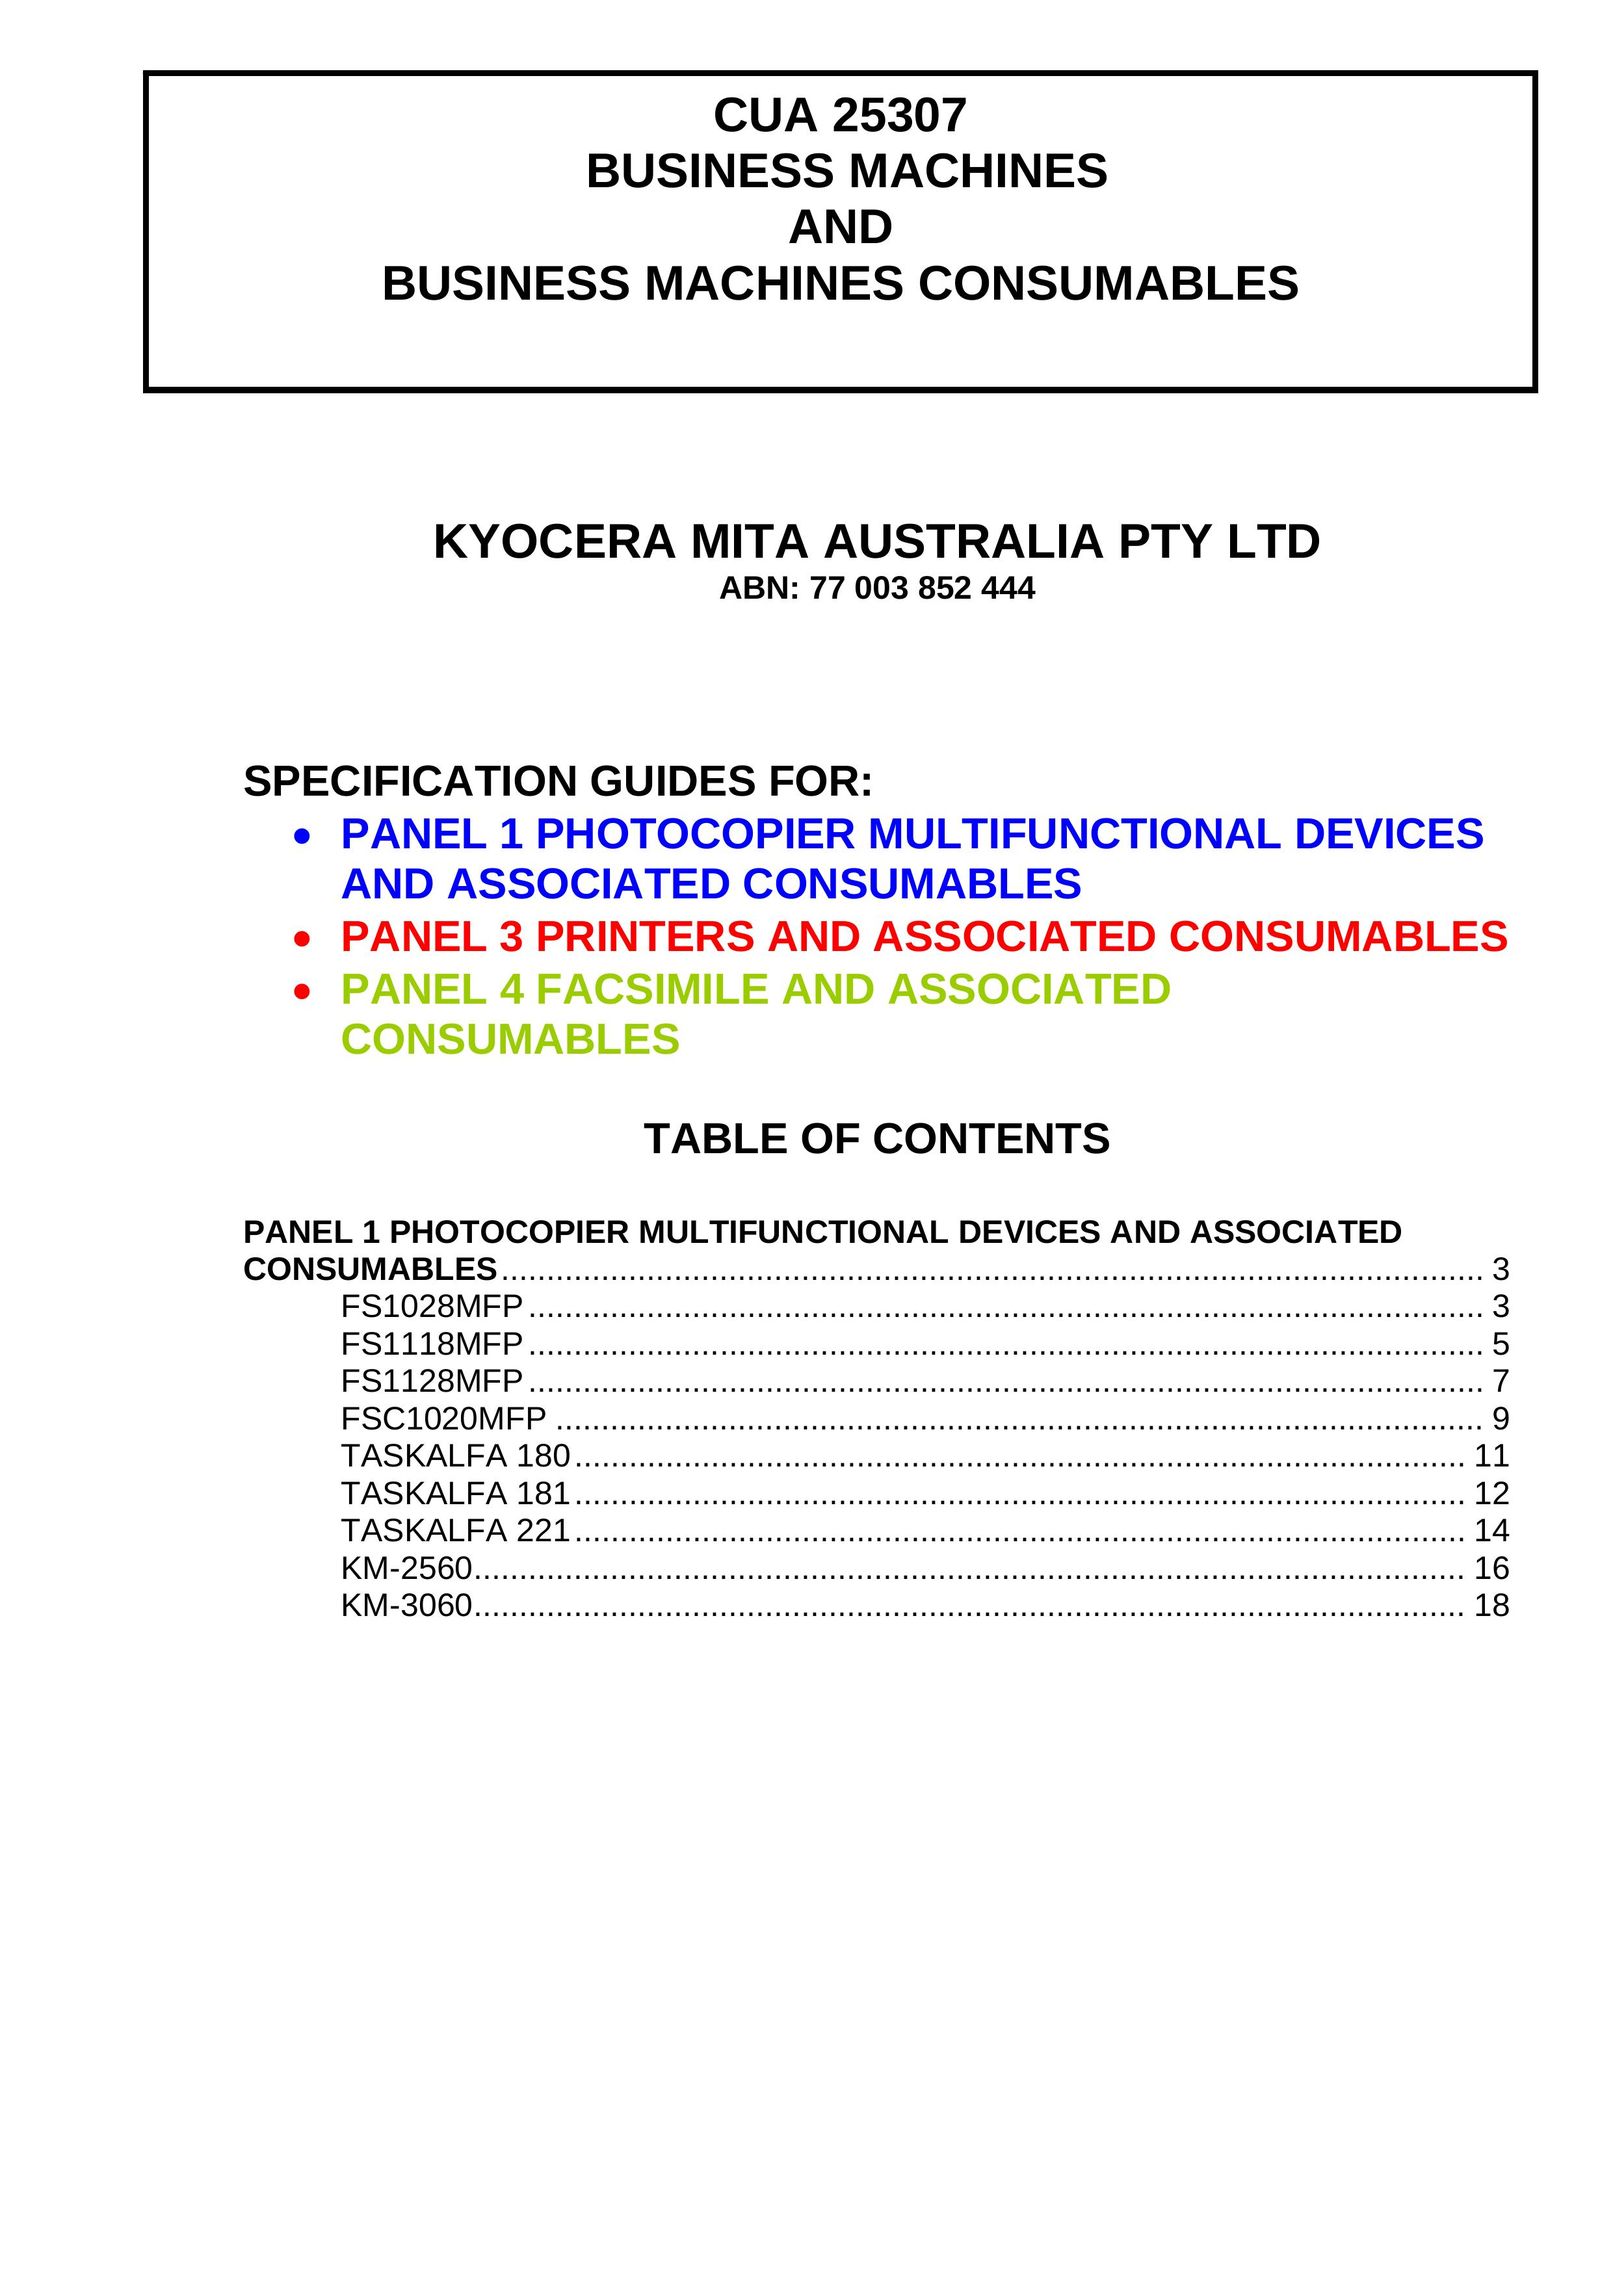 Kyocera CUA 25307 Copier User Manual